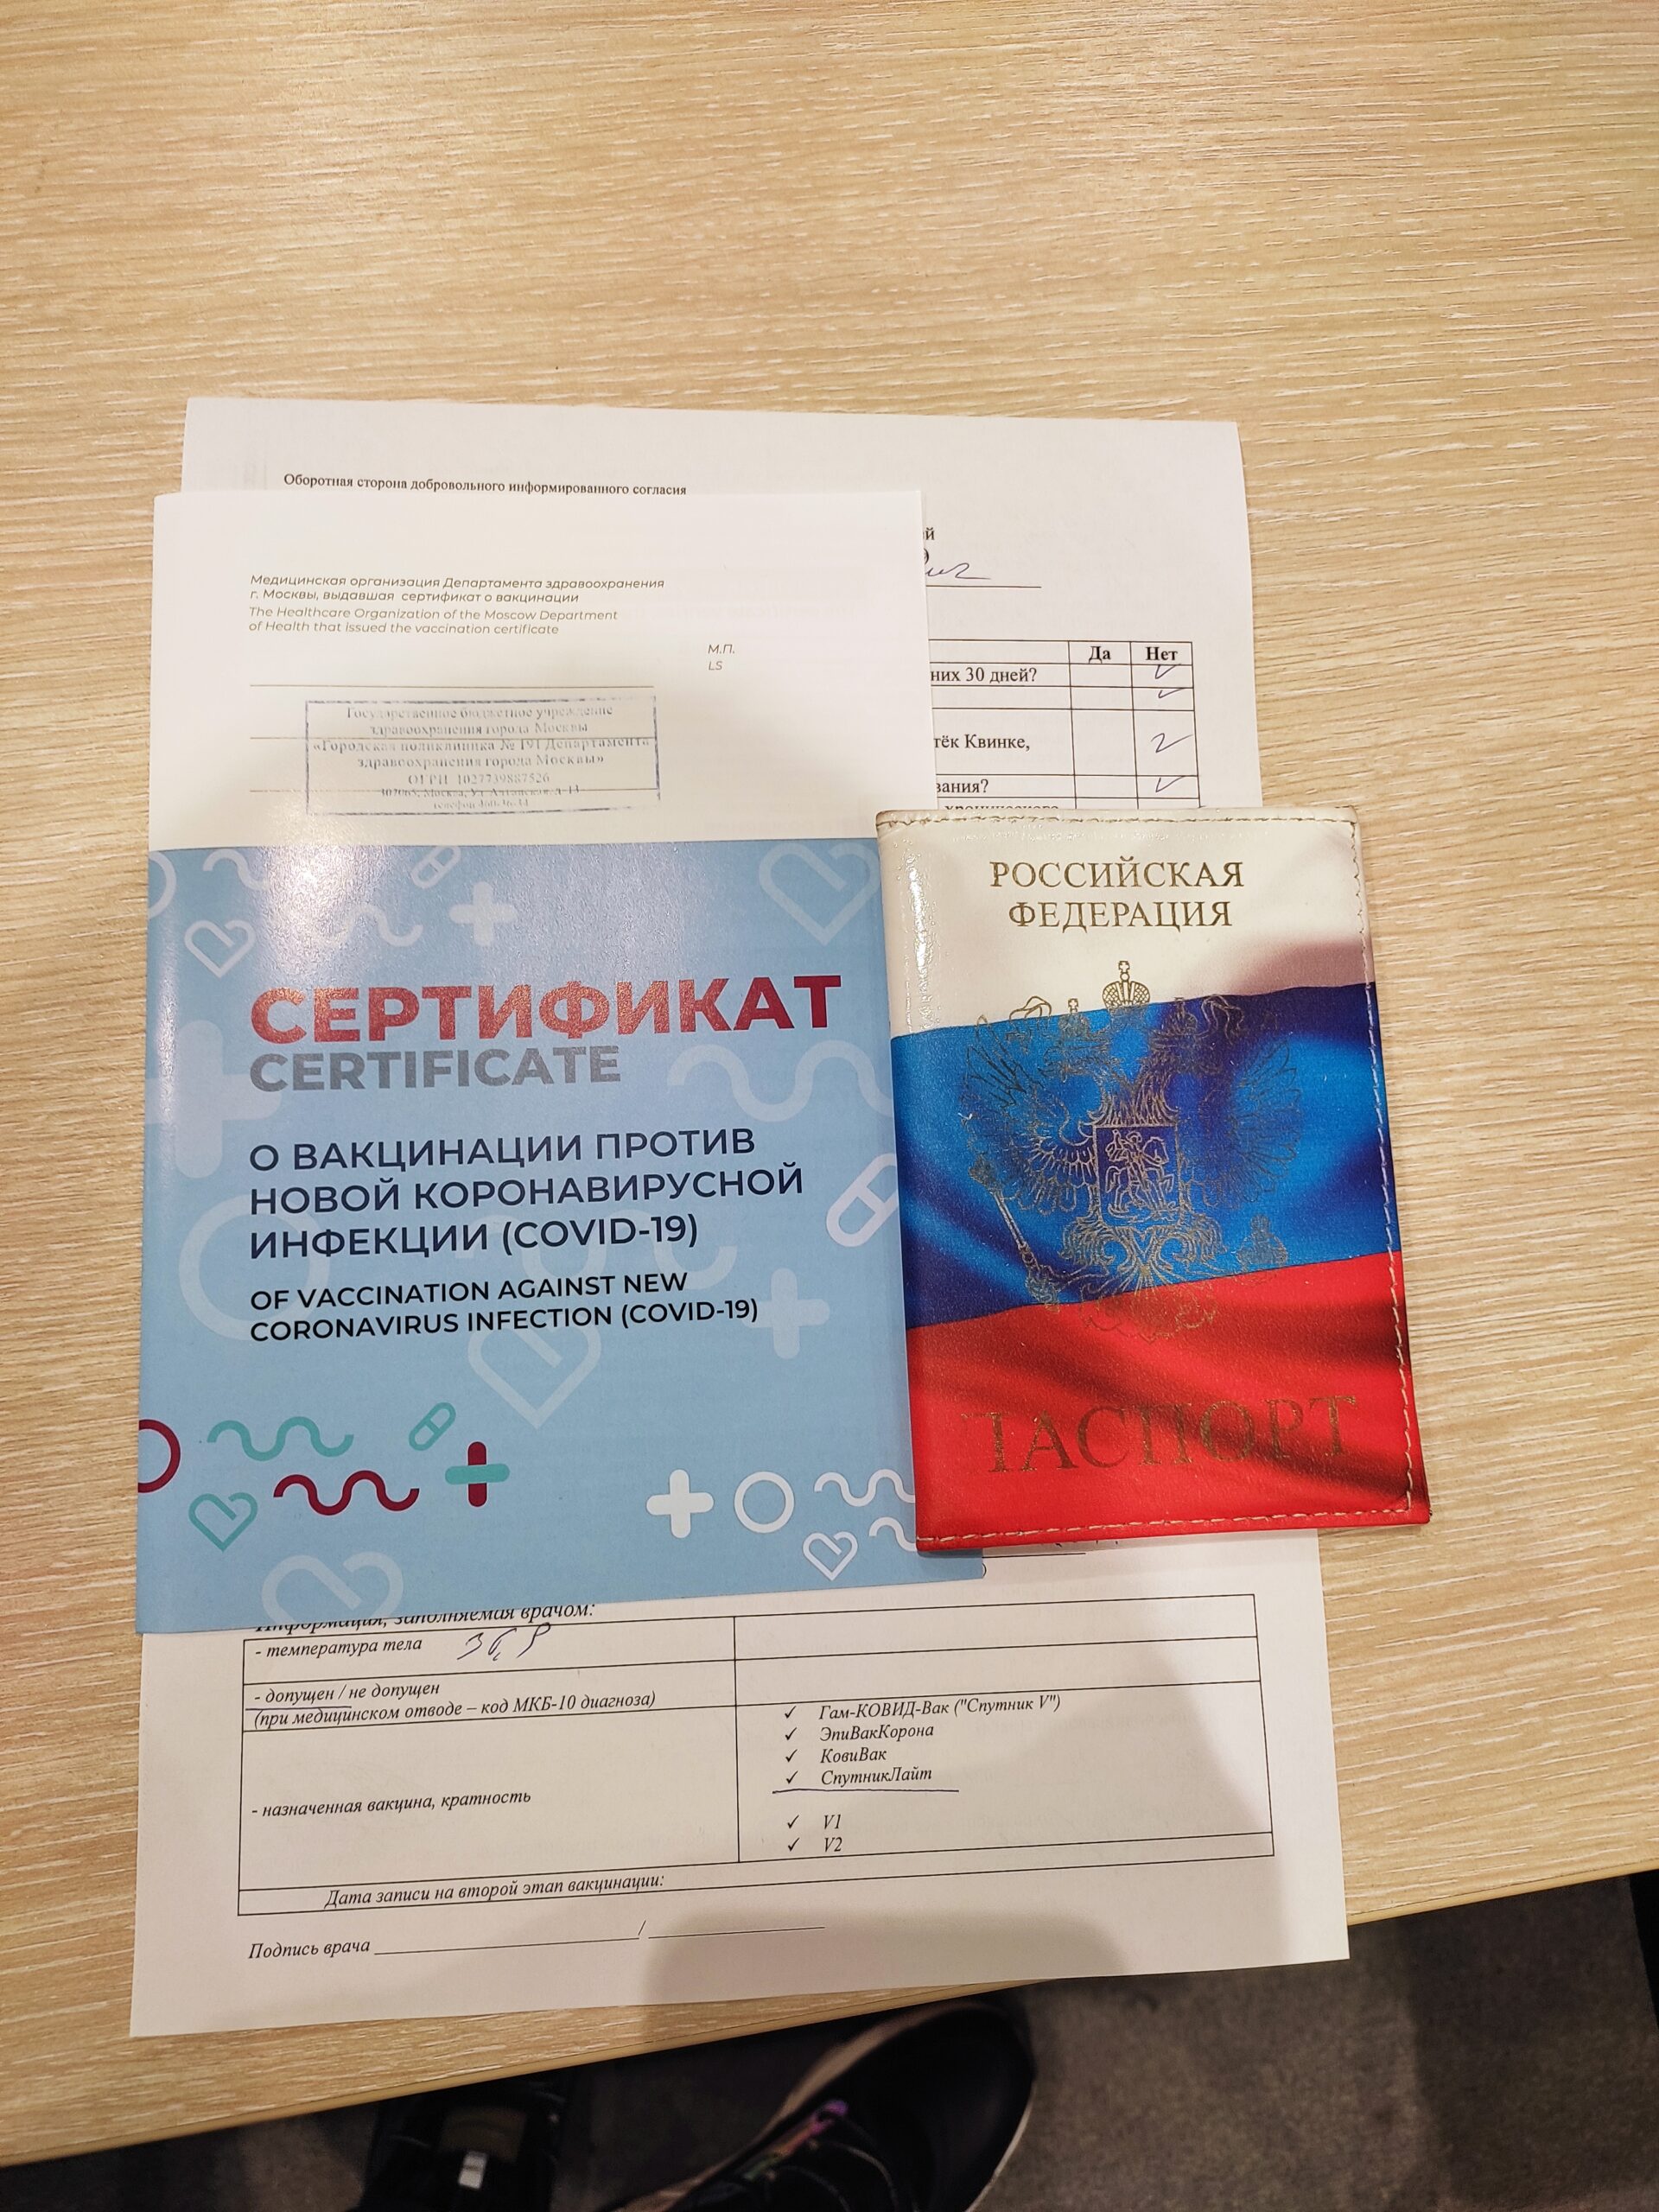 Сертификат о вакцинации, фото - Tochka Zрения